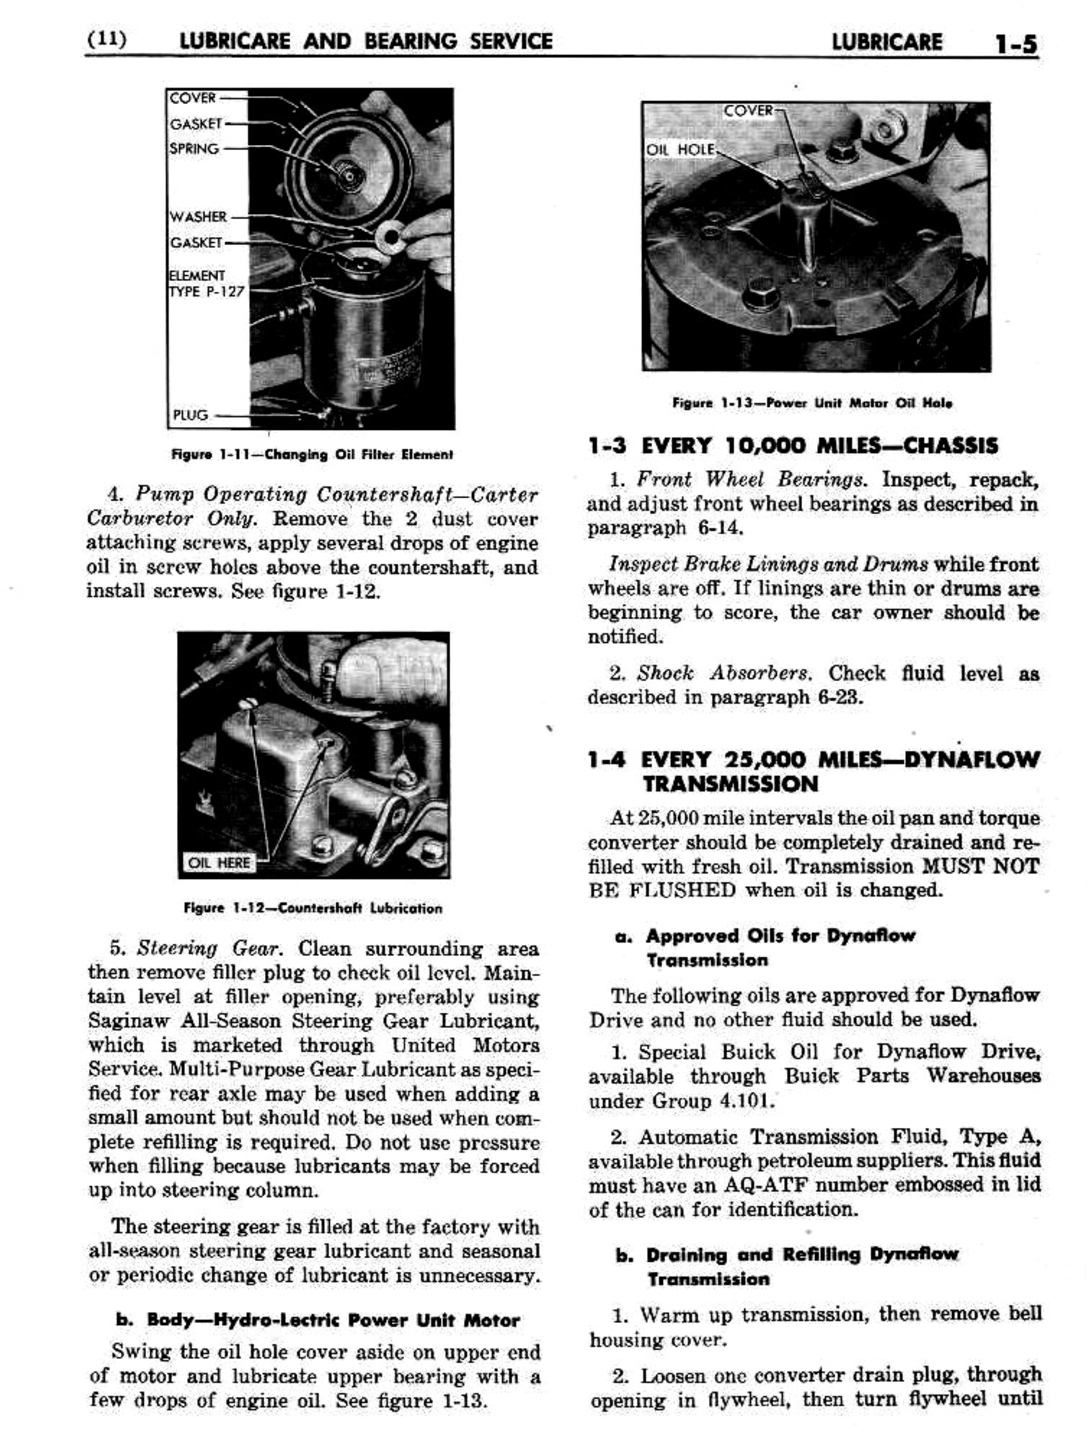 n_02 1951 Buick Shop Manual - Lubricare-005-005.jpg